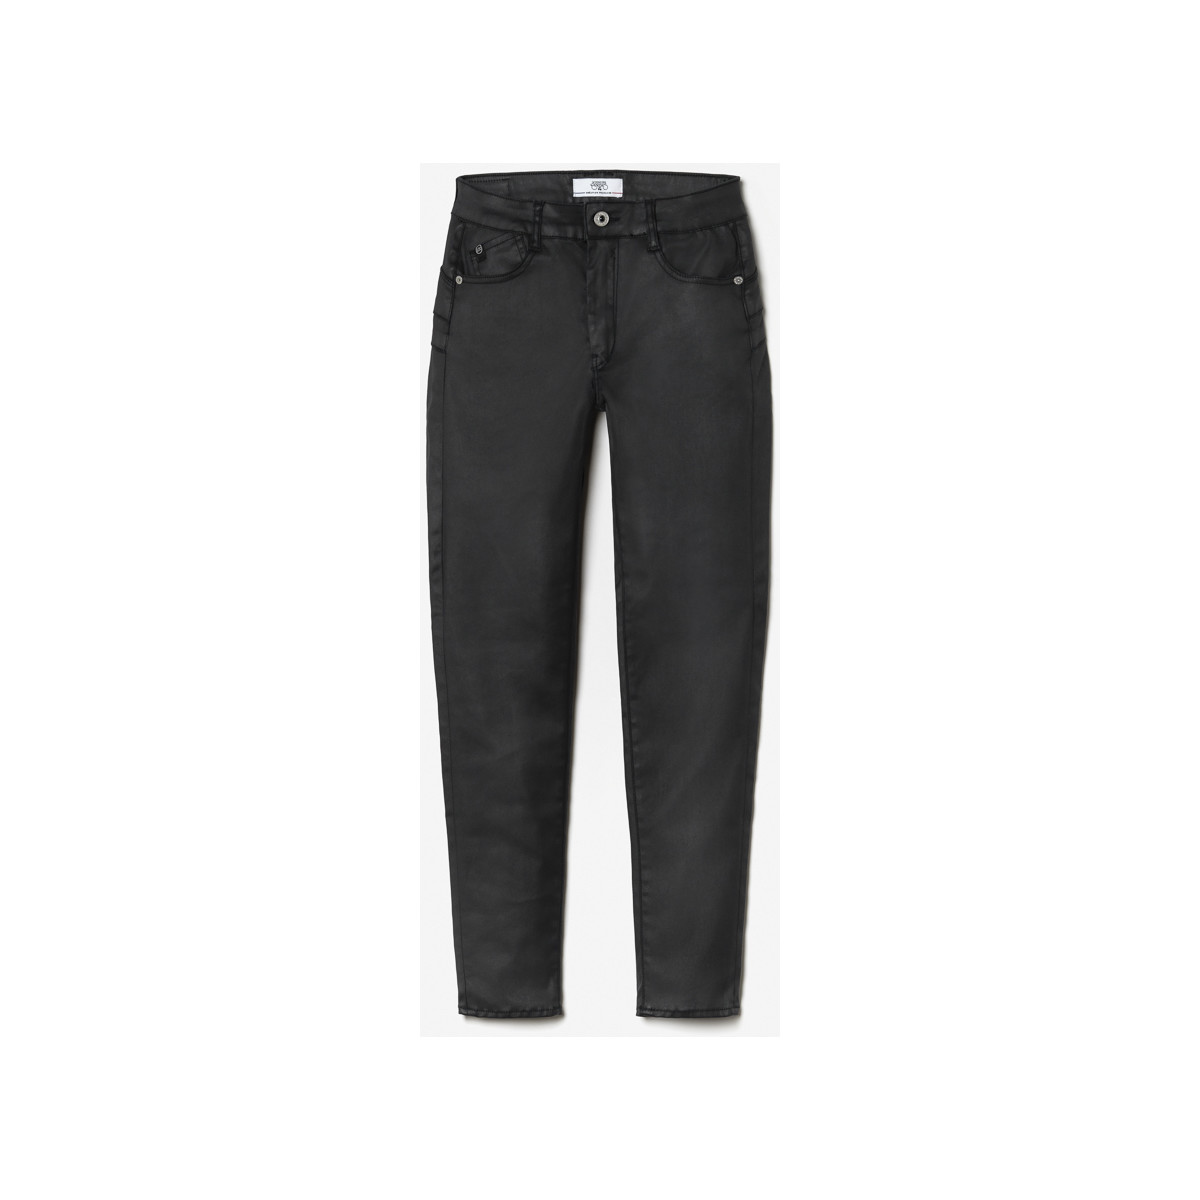 Le Temps des Cerises Noir Pulp slim taille haute 7/8ème jeans enduit noir n°0 VS4DkOOO